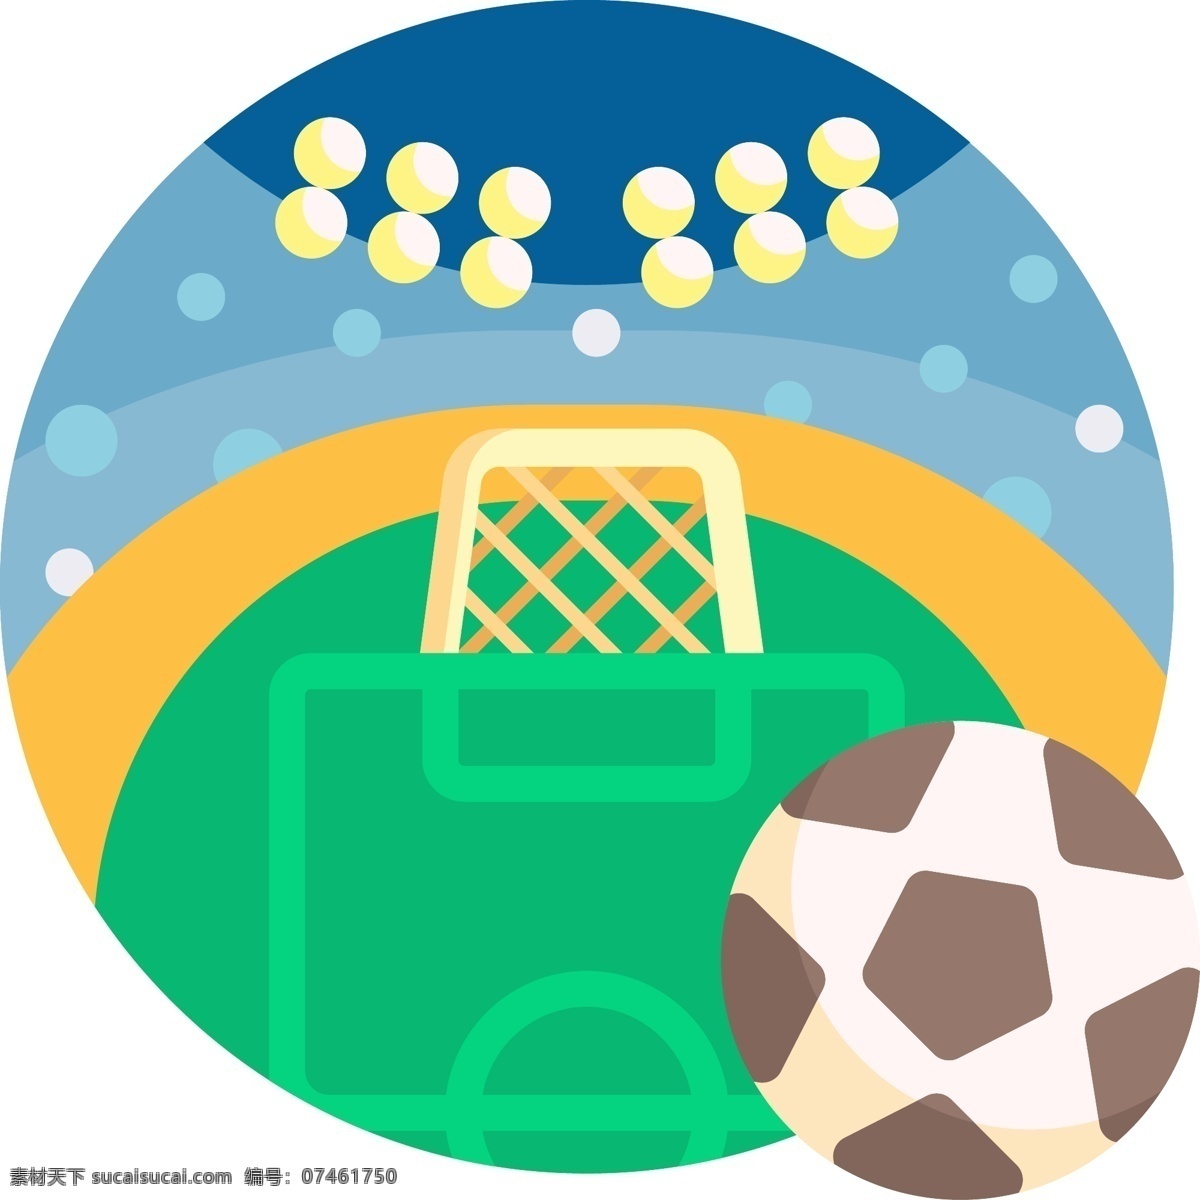 足球 体育运动 图标 网页图标 手机 app 手机图标 icon 手机icon 网页icon 手机网页 足球场 足球比赛 啦啦队 体育比赛